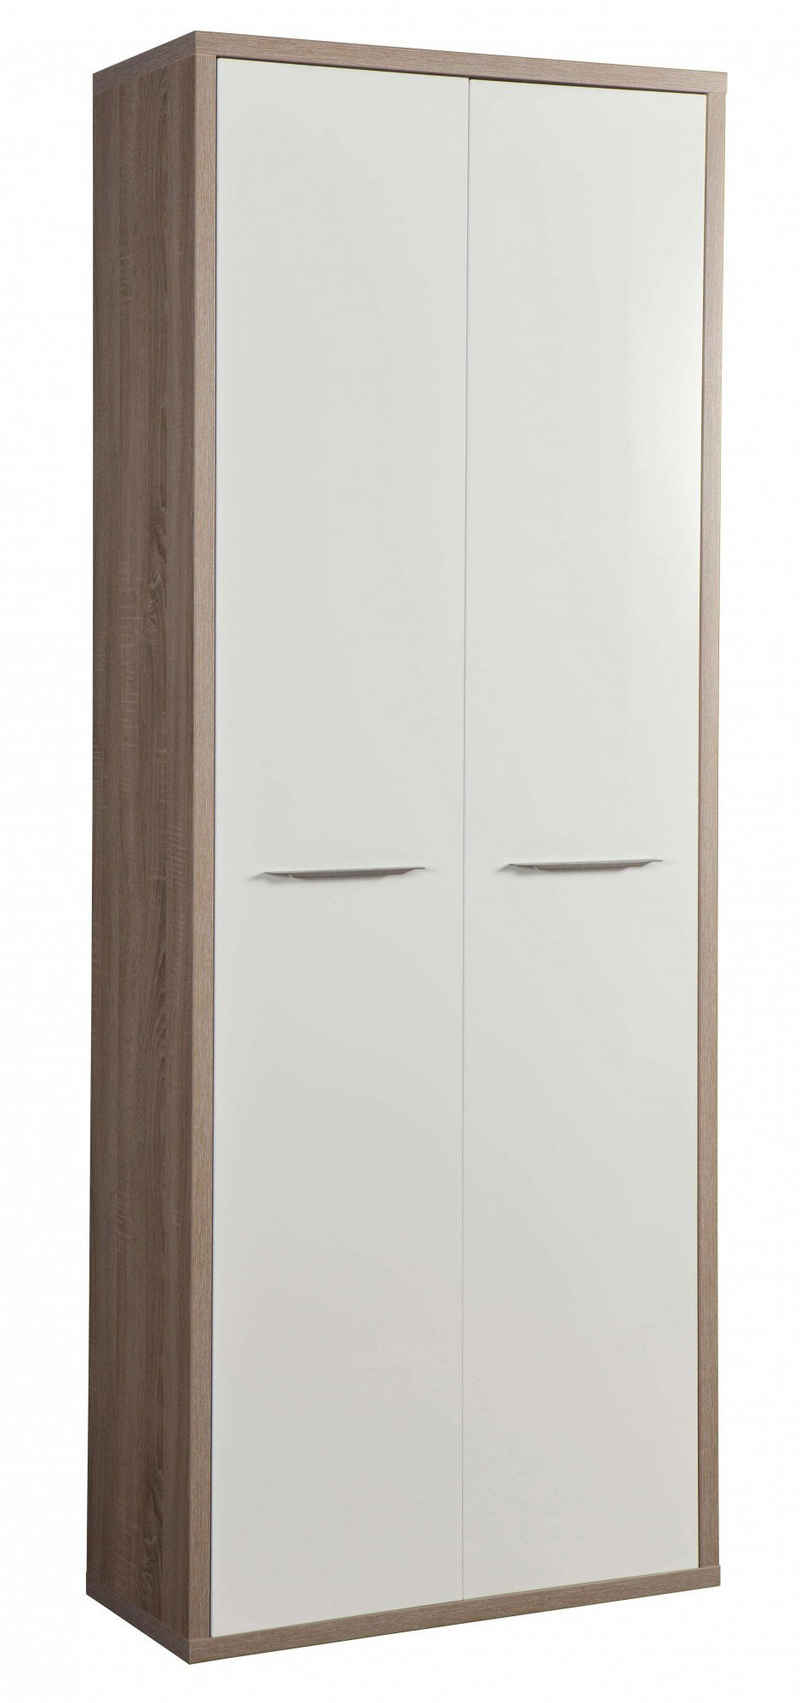 Composad Aktenschrank DISEGNO, Bücherregal, 2 Türen, lackierte Fronten, verstellbare Böden, Höhe 217 cm, 100% recyceltes Holz, Made in Italy